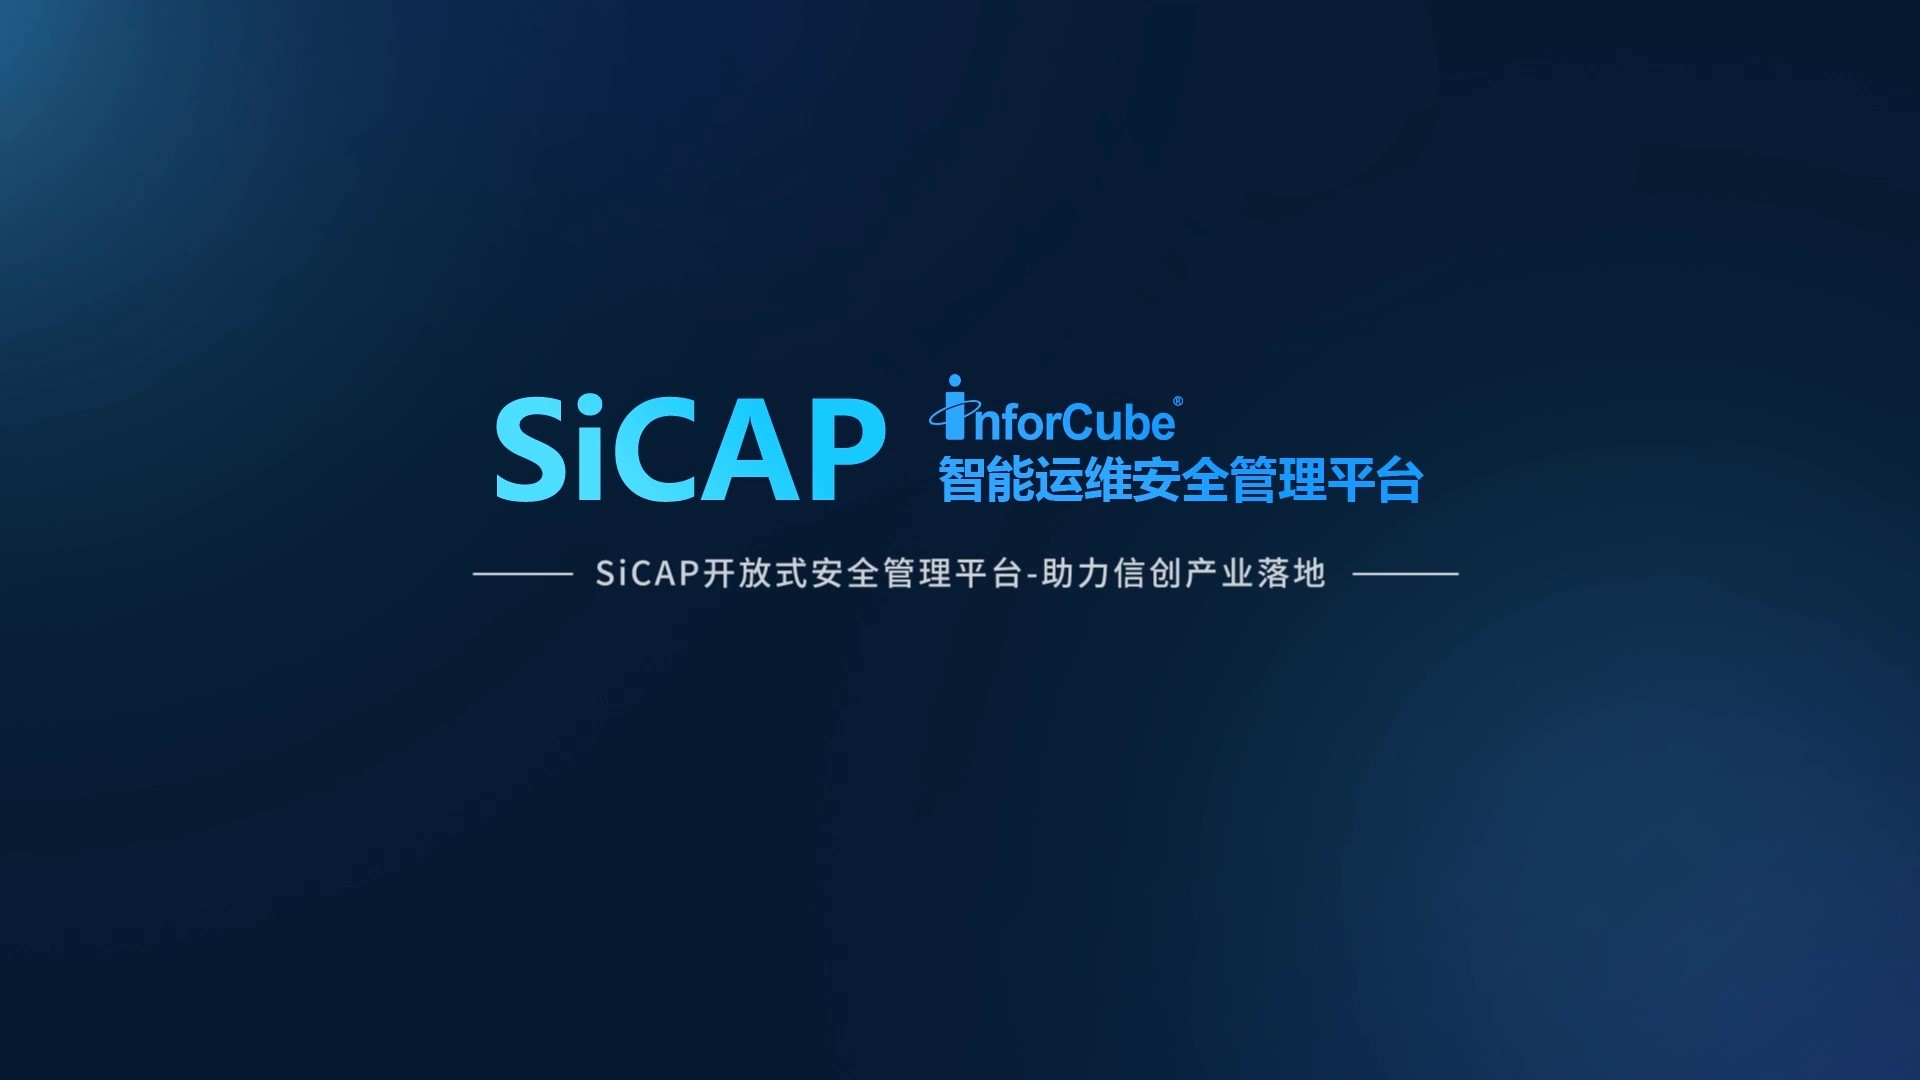 SiCAP開(kāi)放(fàng)式安全管理平台-助力信創産業落地